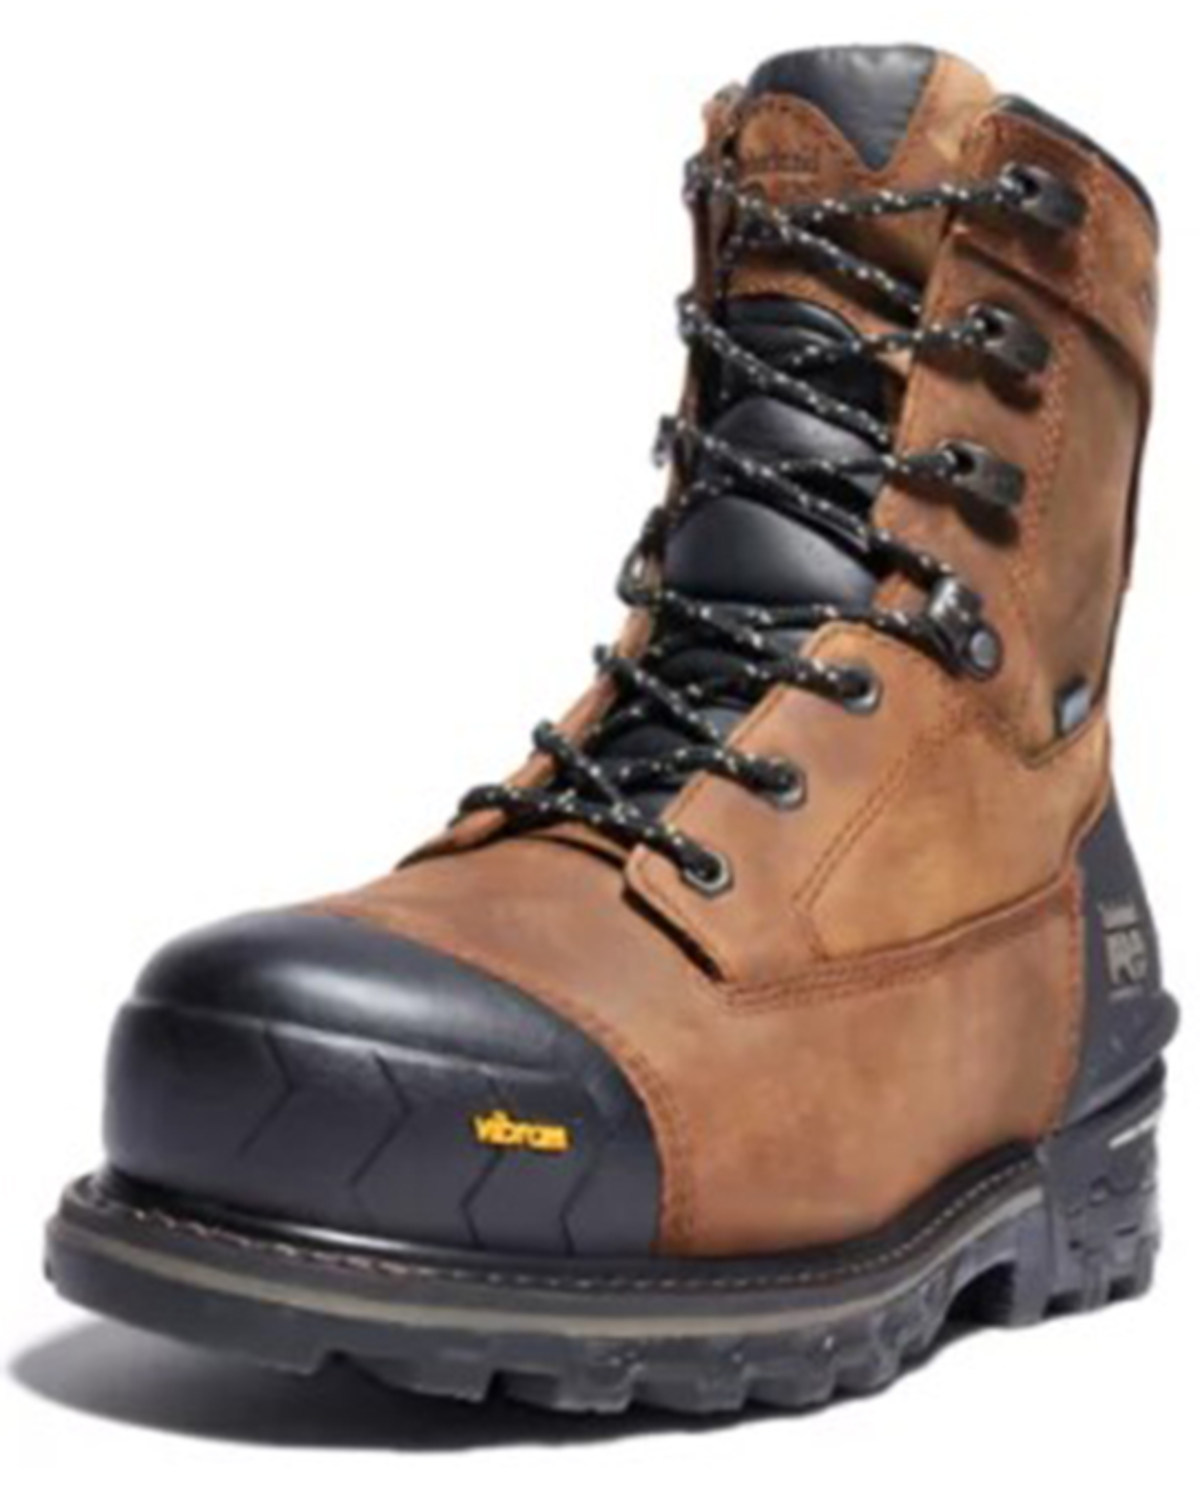 Timberland Men's Boondock Waterproof Work Boots - Composite Toe